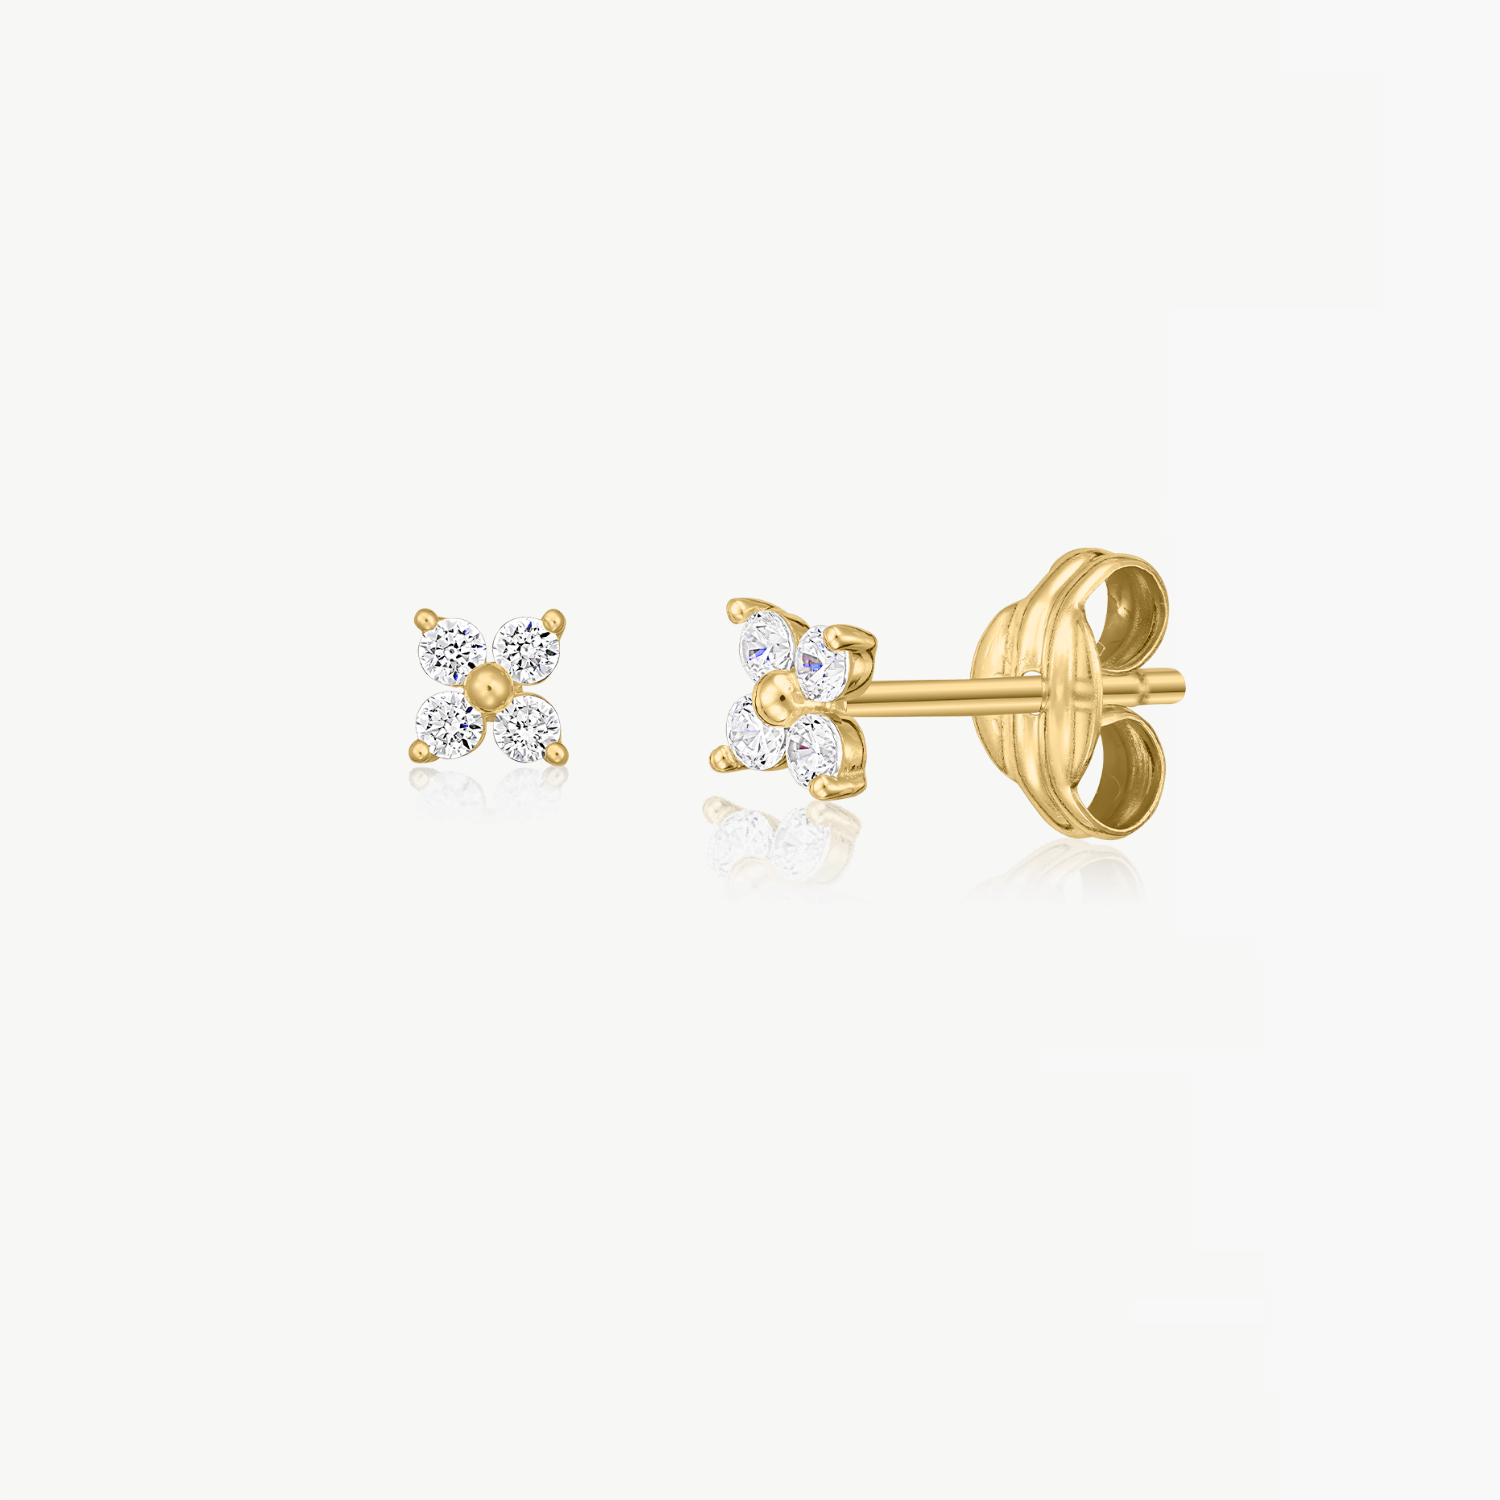 Edelweiss gold earrings - Zirconium